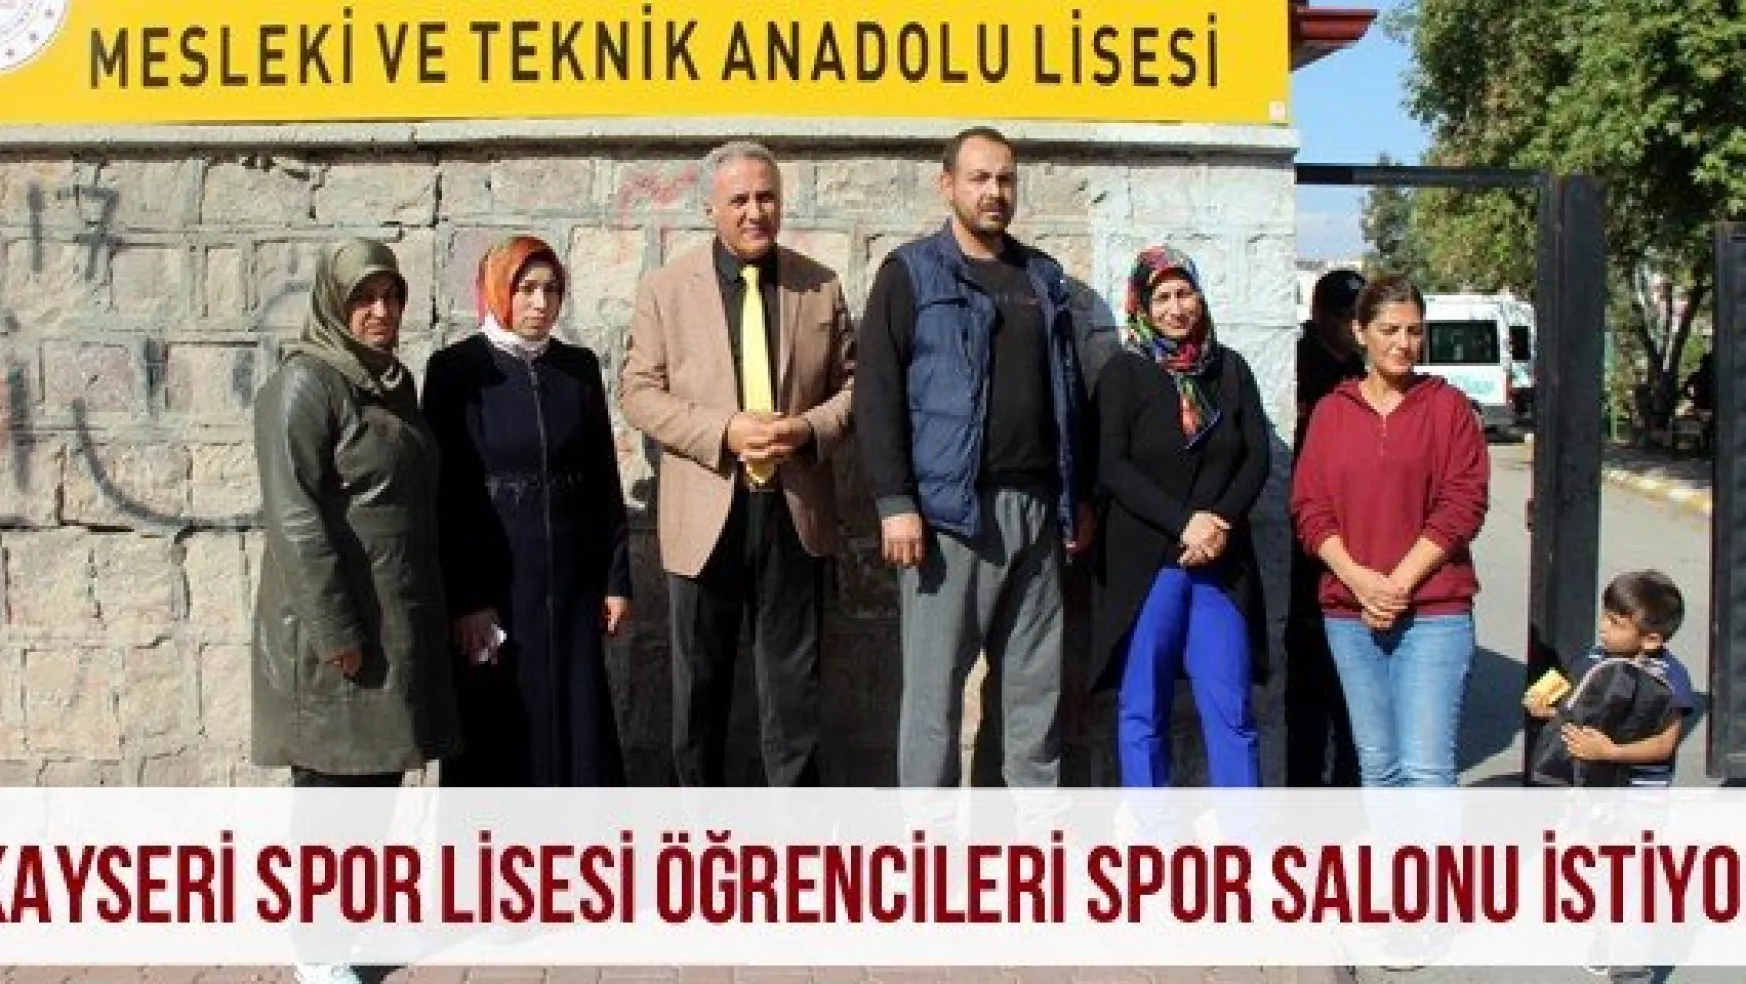 Kayseri Spor Lisesi öğrencileri spor salonu istiyor